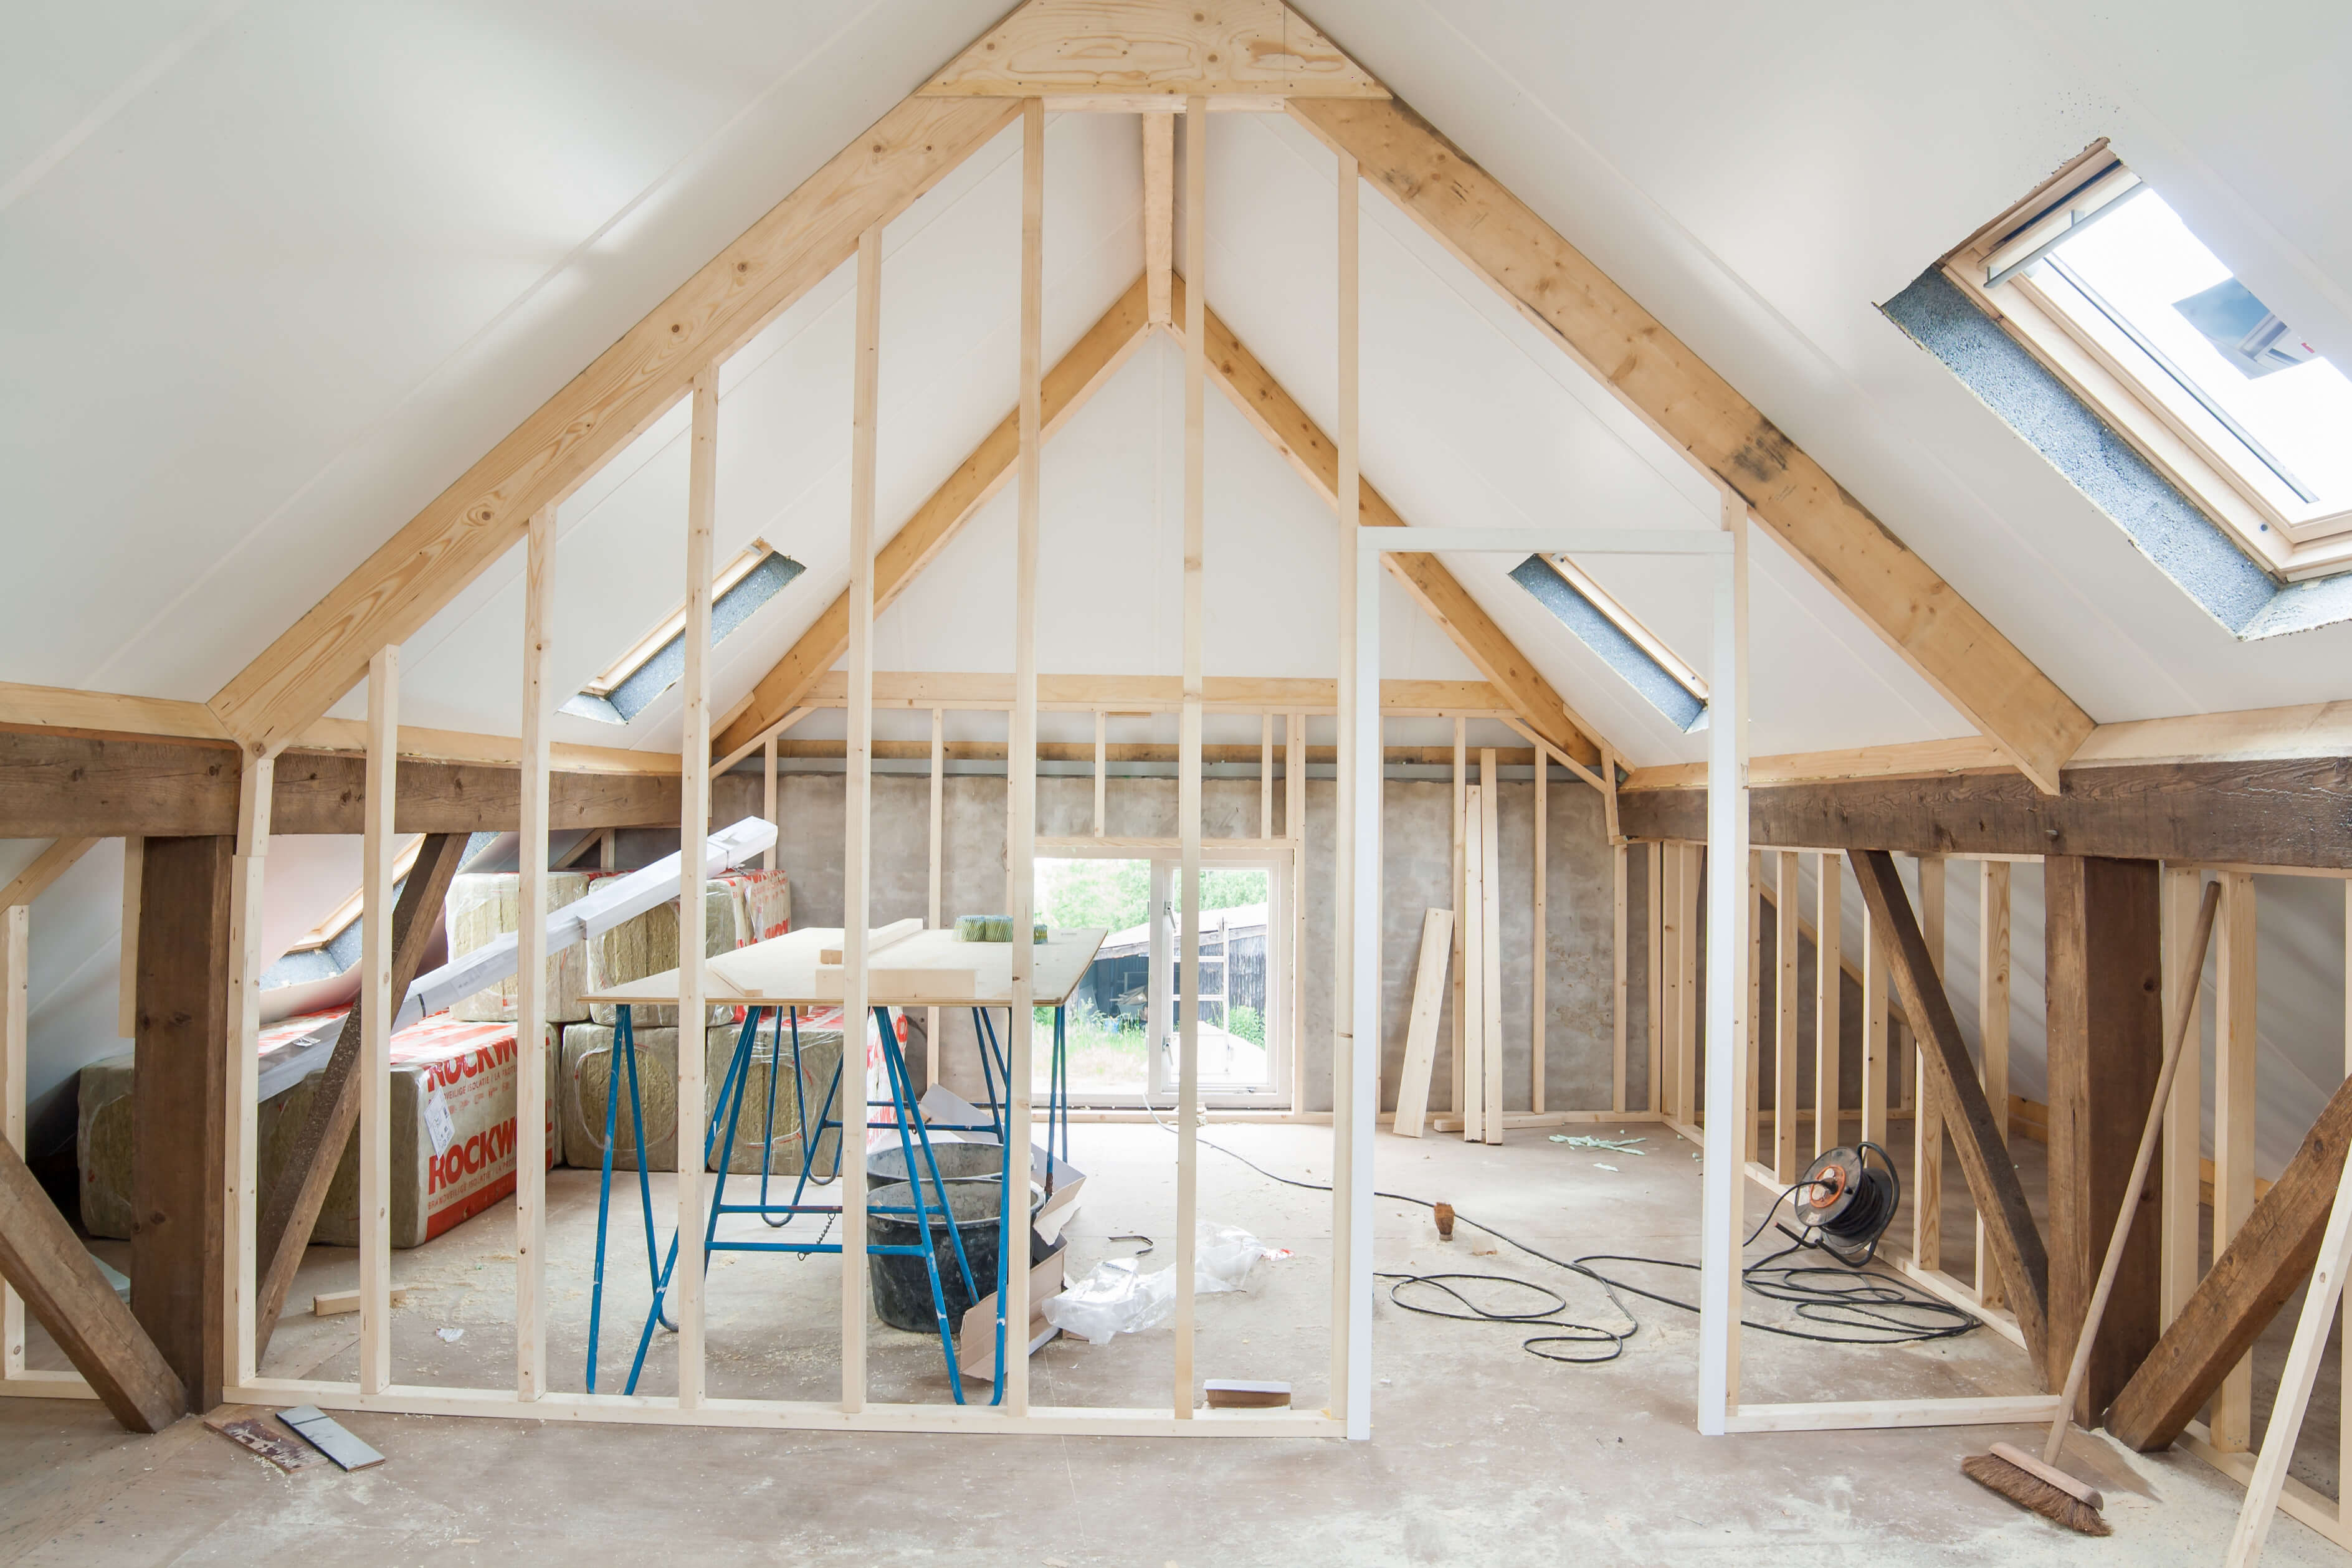 loft-insulation-thickness-regulations